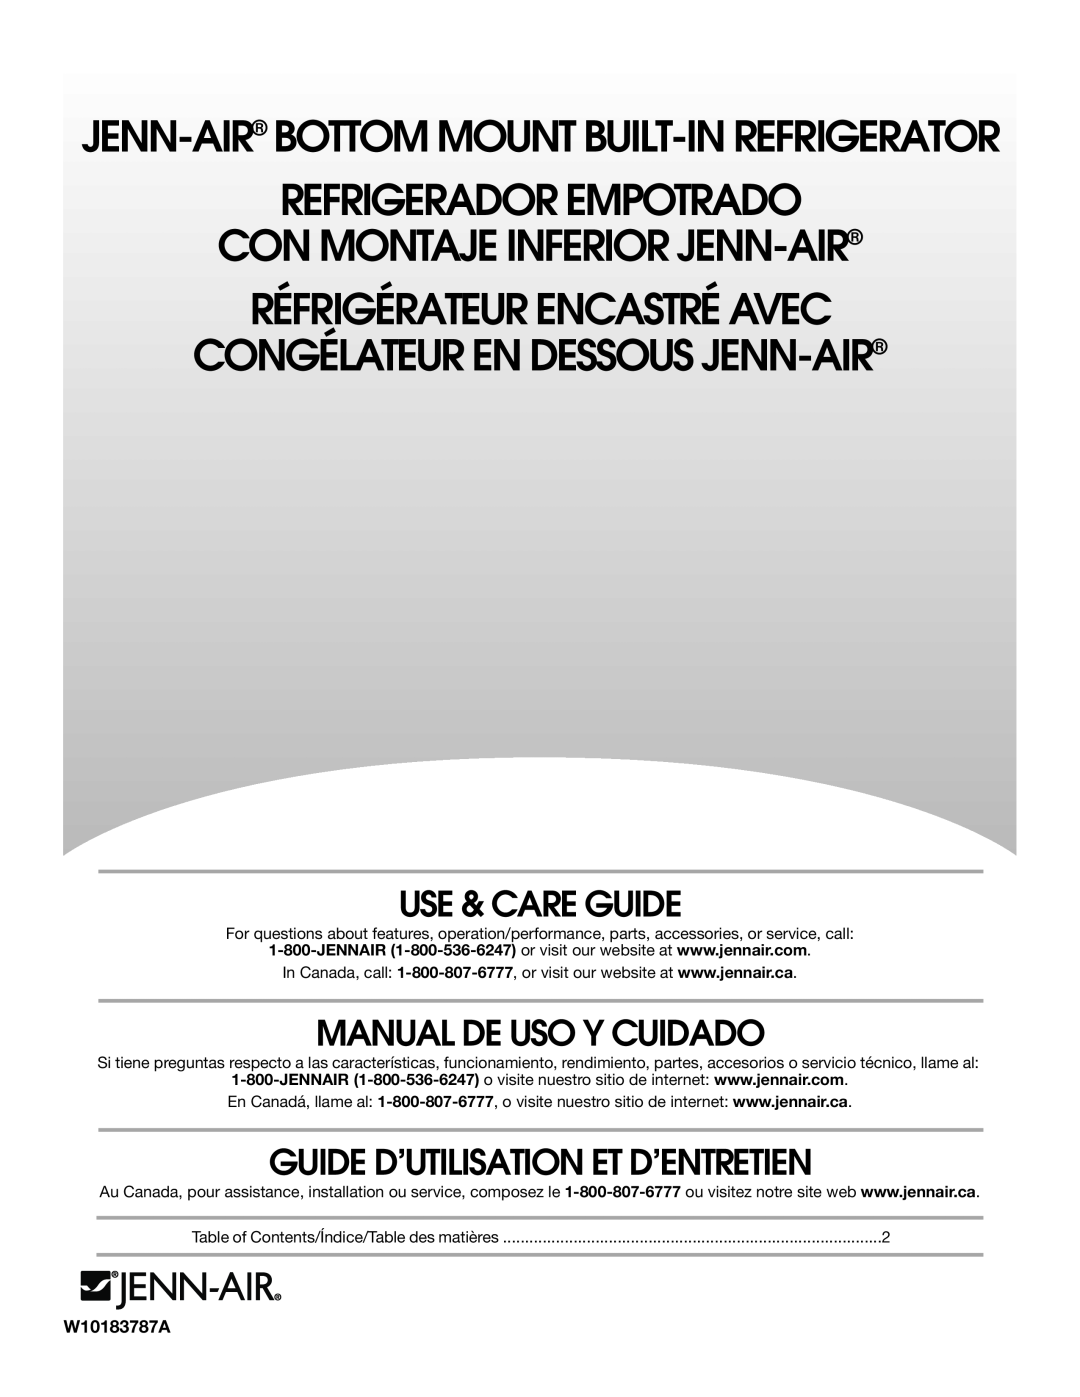 Jenn-Air W10183787A manual Use & Care Guide, Manual De Uso Y Cuidado, Guide D’Utilisation Et D’Entretien 